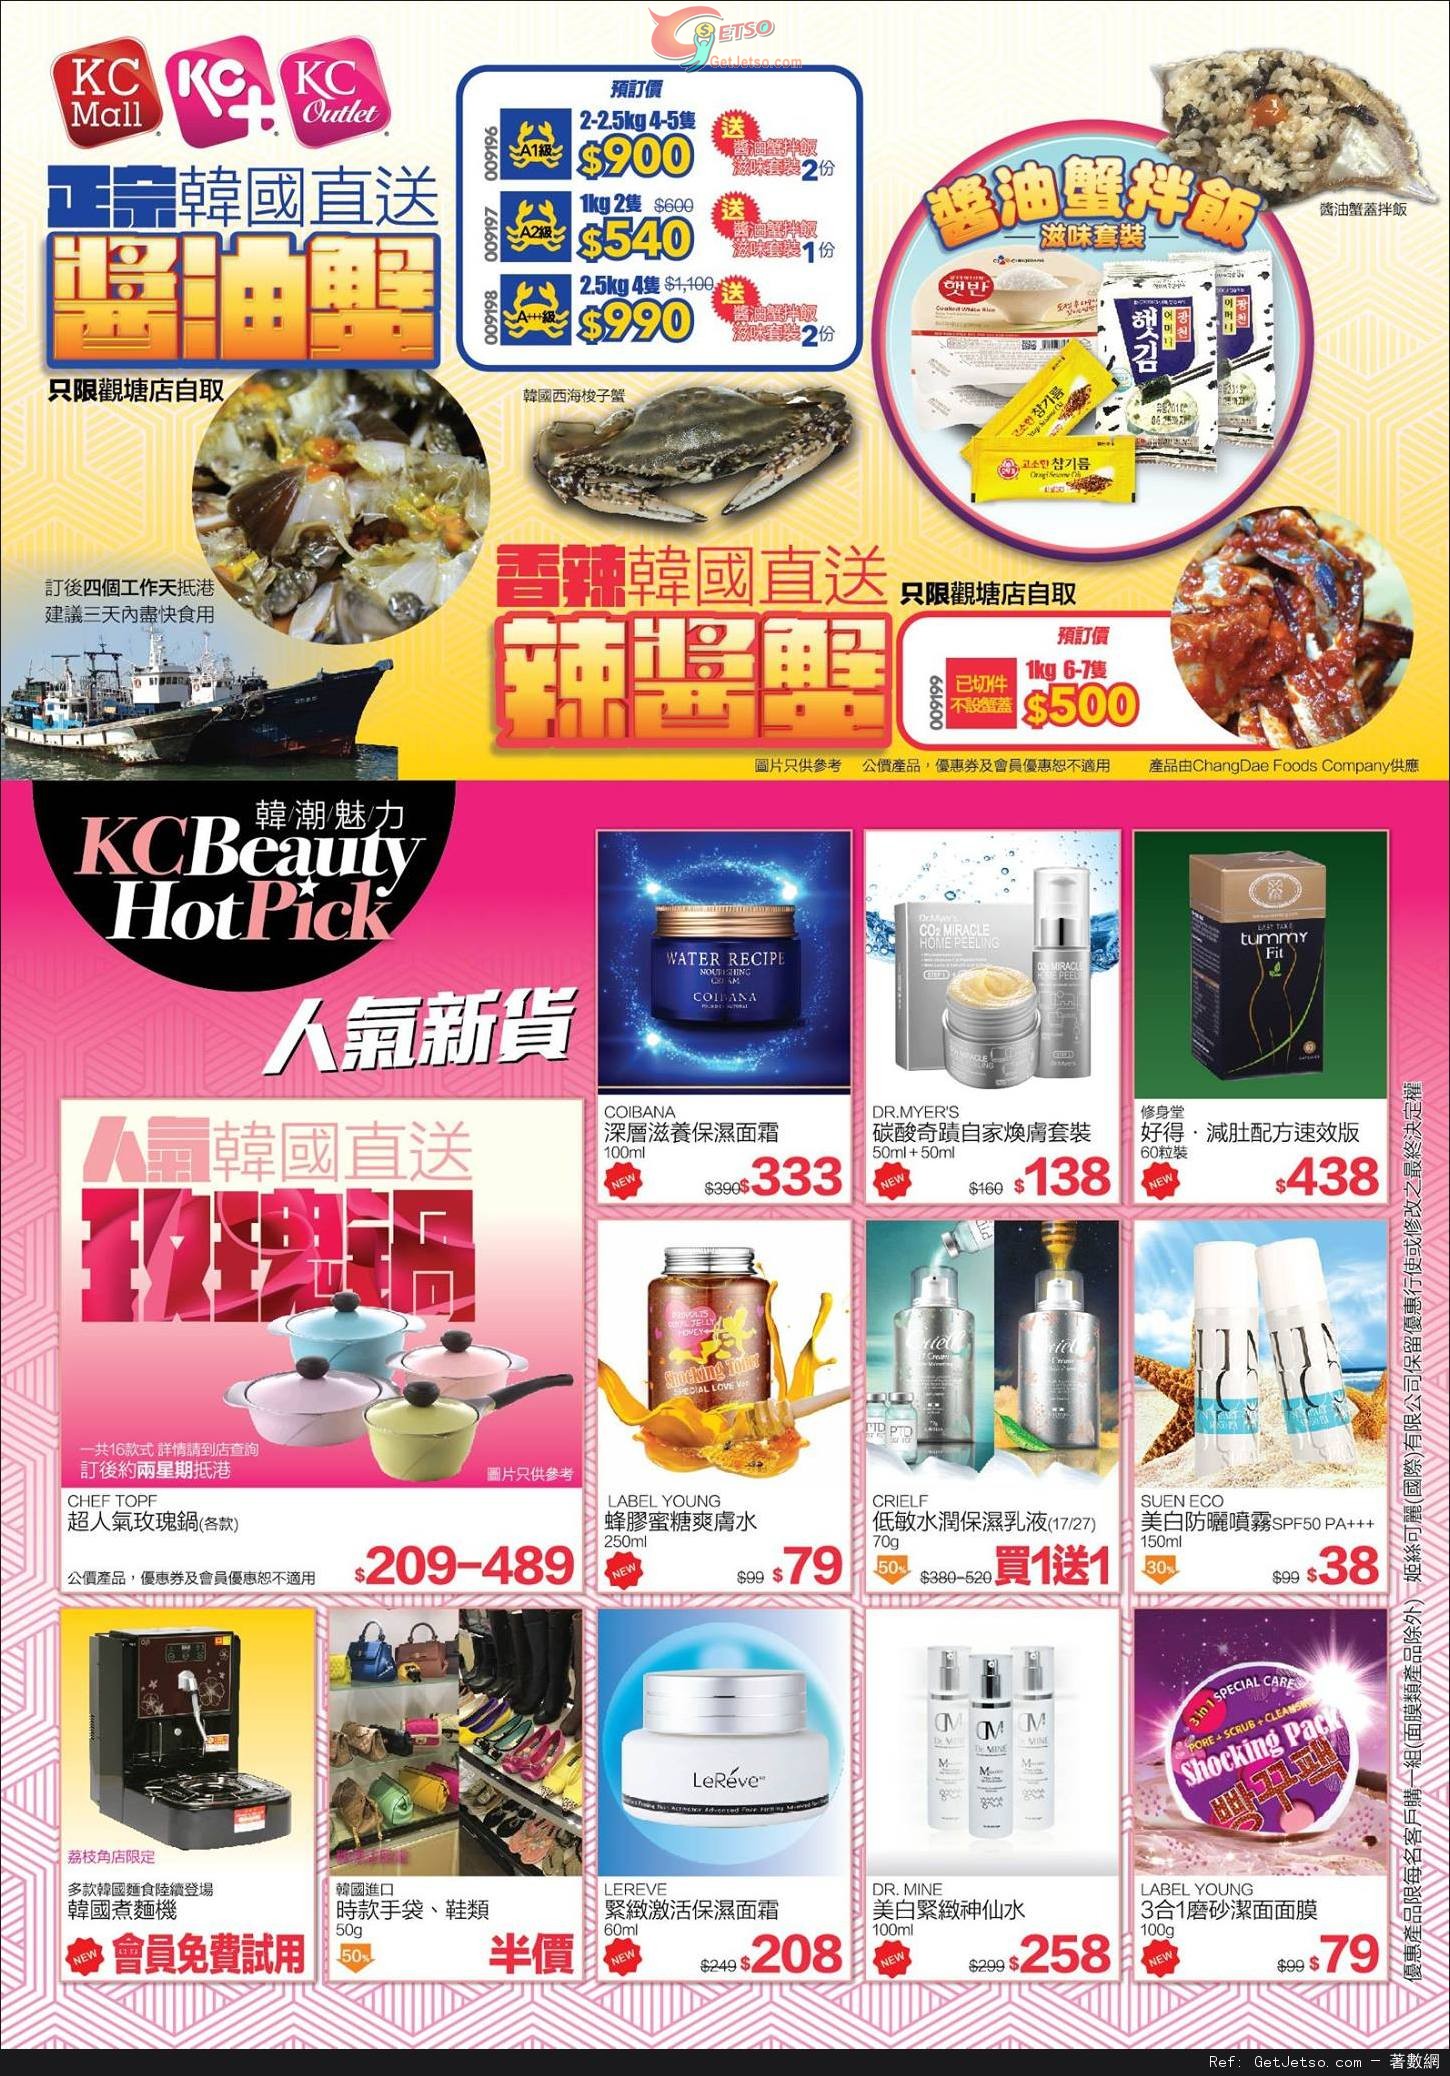 KC Korea 韓國用品專賣店購物優惠(至15年10月18日)圖片2